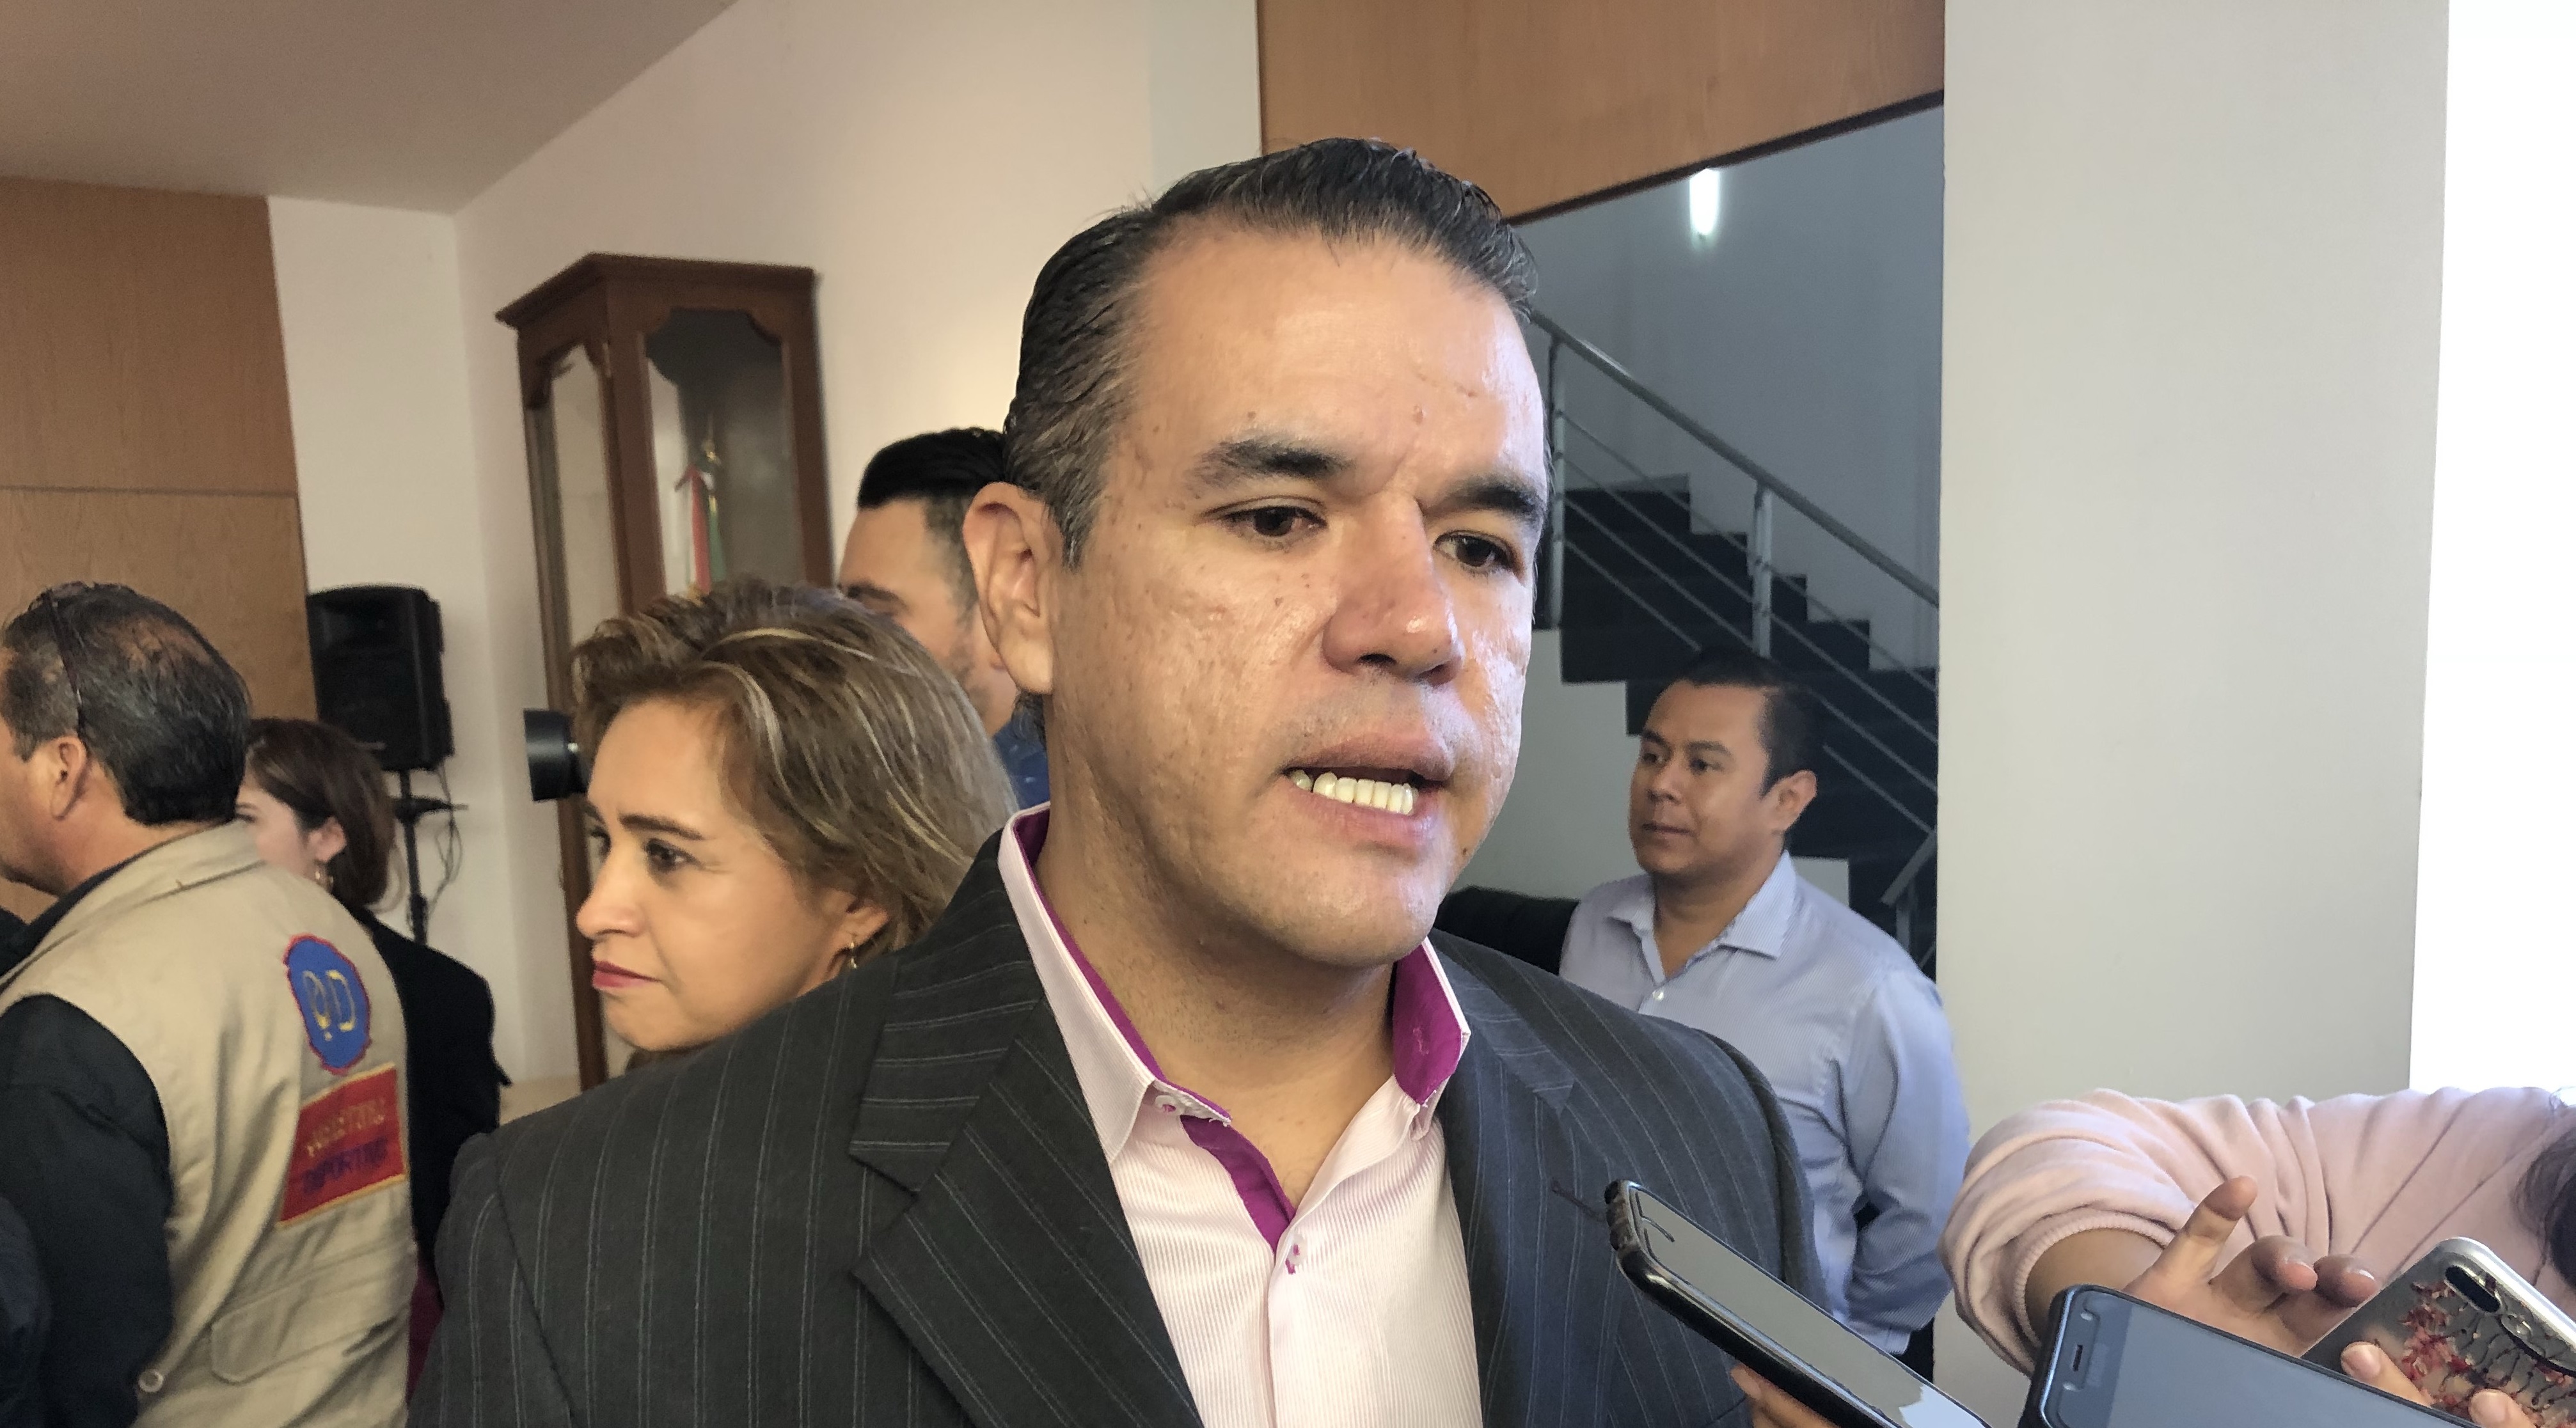  Diputado Mauricio Ruiz Olaes busca reunión con familiares de desaparecidos en Querétaro